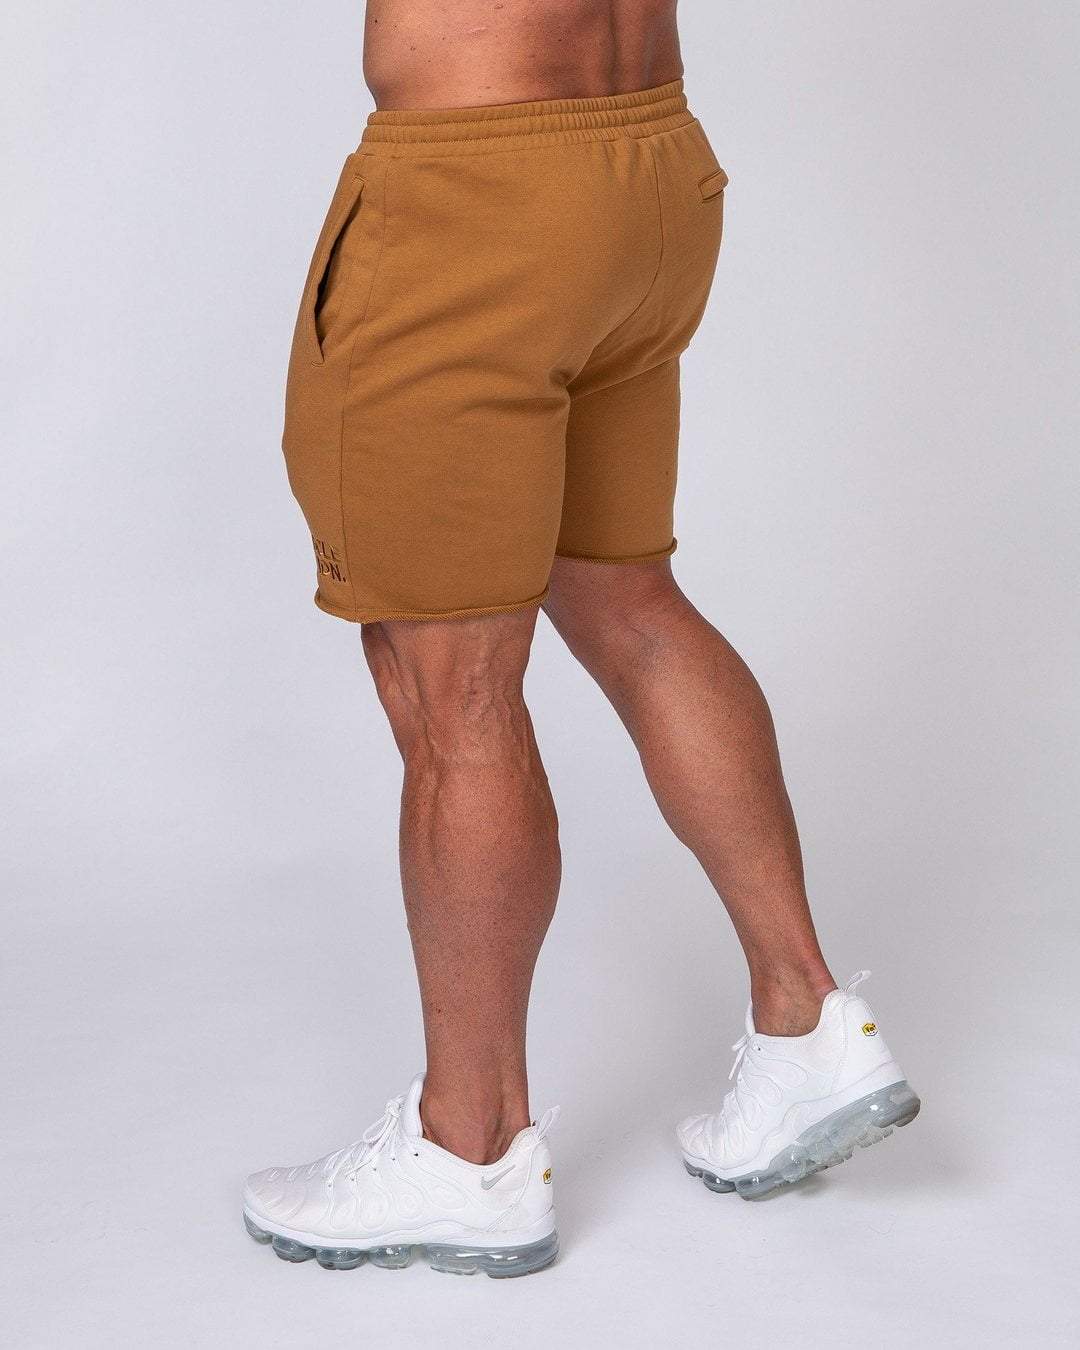 musclenation Mens Vintage Shorts - Latte